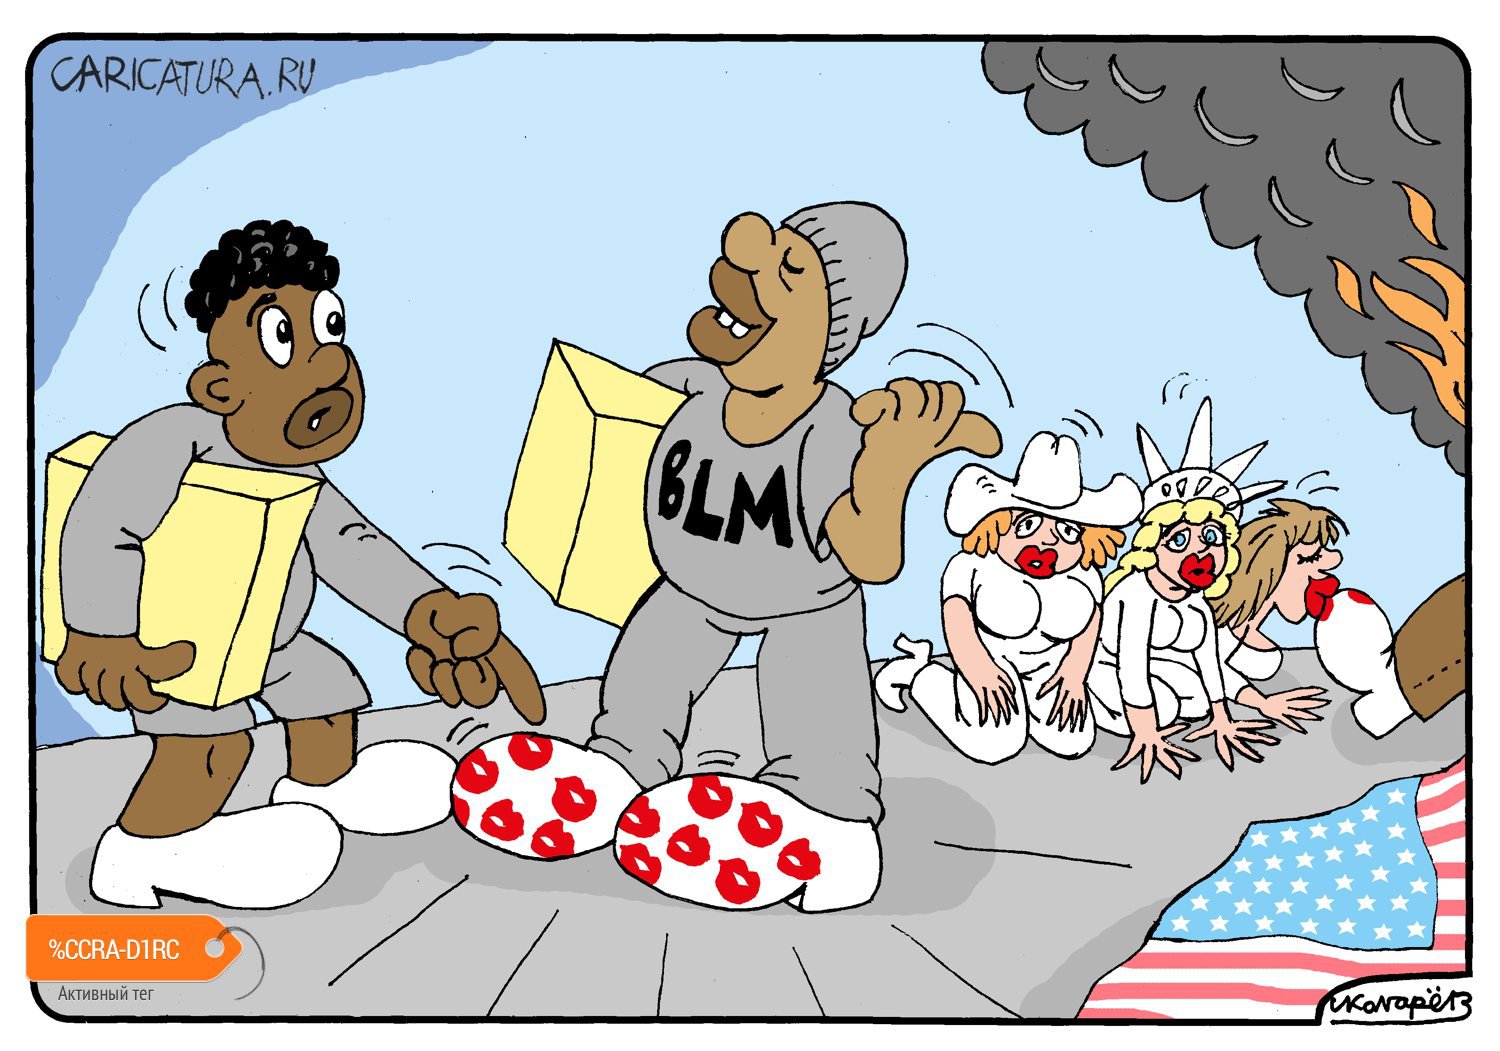 Карикатура "Ботинки в США сегодня", Игорь Колгарев